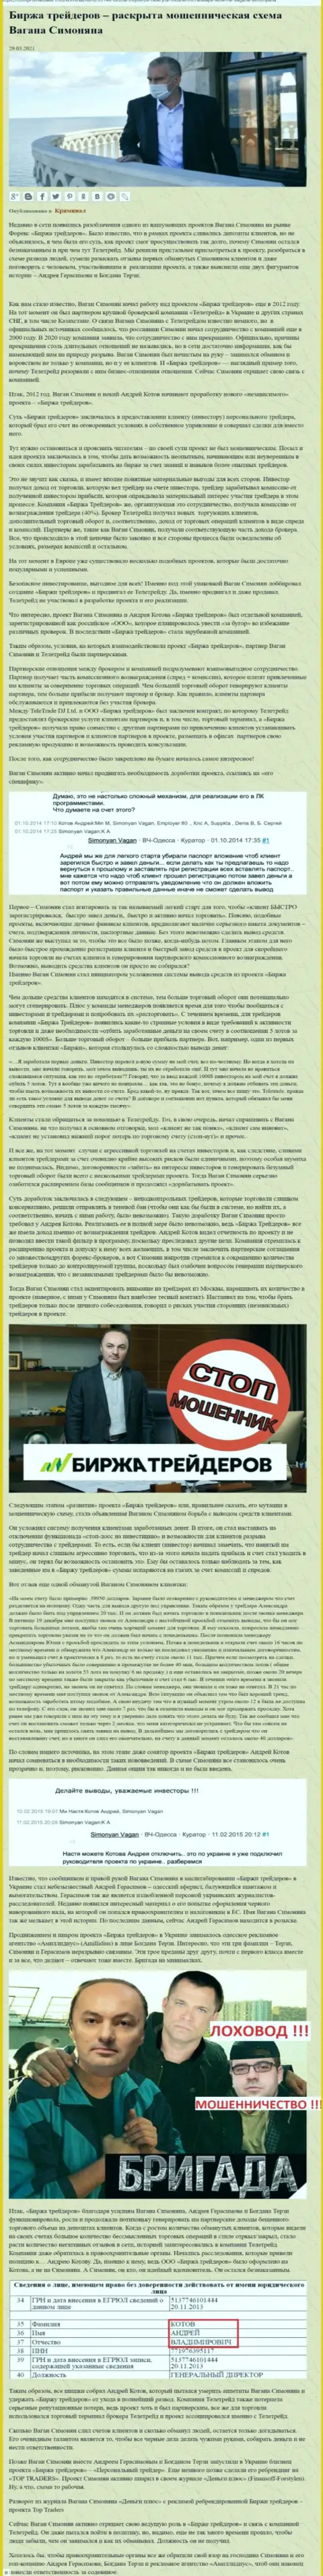 Продвижением организации B Traders, тесно связанной с мошенниками TeleTrade Org, тоже был занят Богдан Терзи